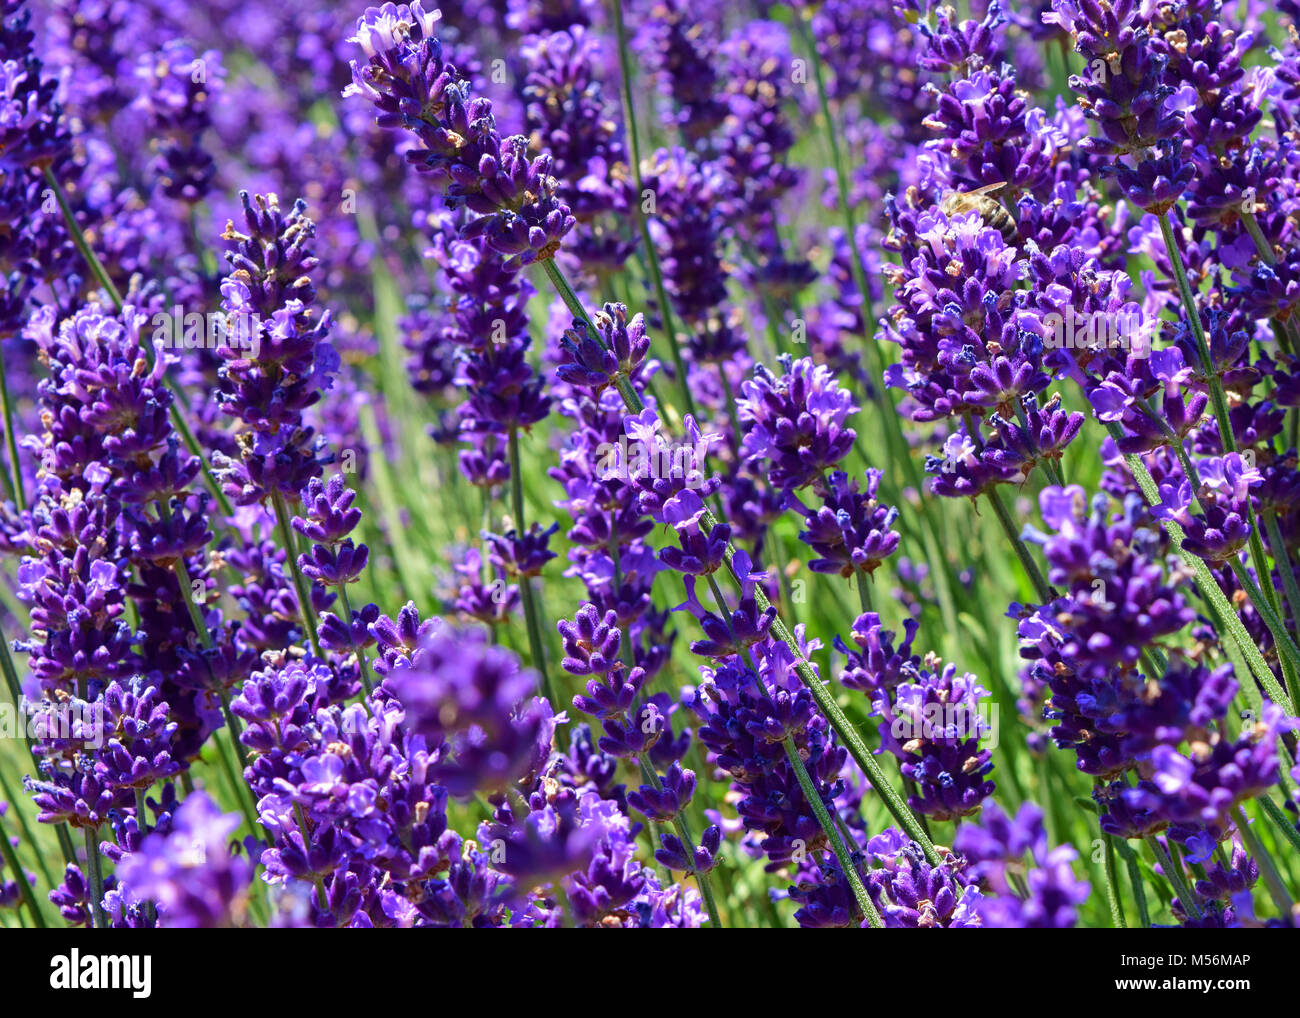 Close up Ultra Violett Lavendel blühen in einem Feld. Lavandula angustifolia. Natürliches Aussehen. Stockfoto